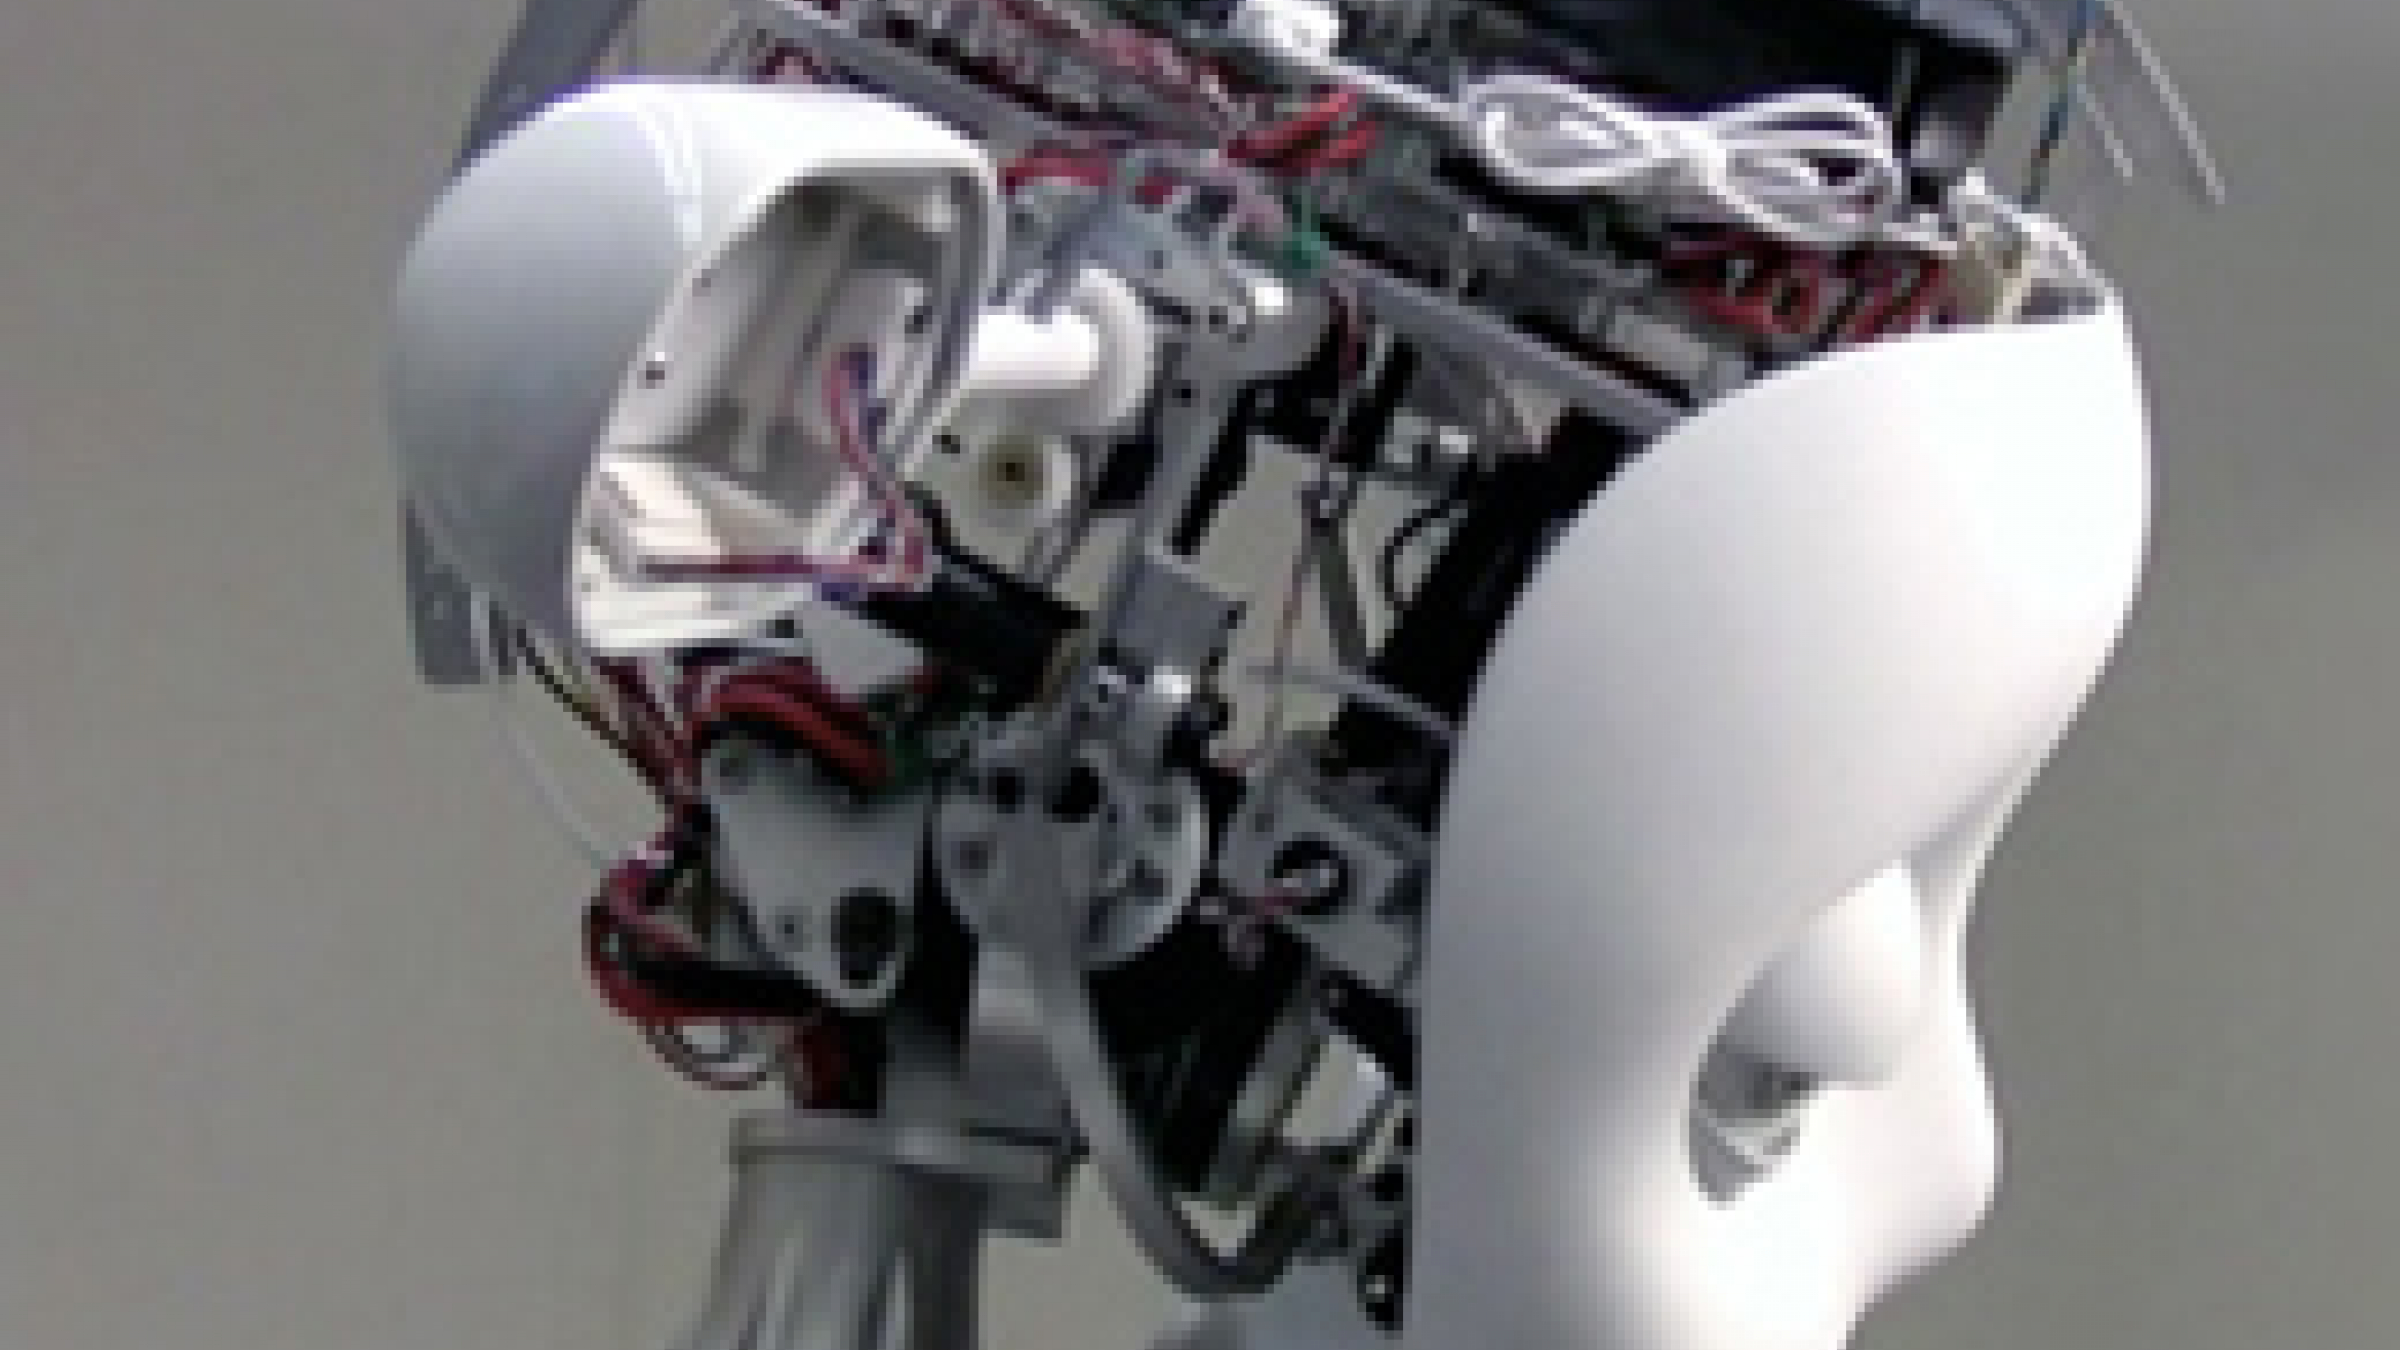 Simon Humanoid Robot, 2009